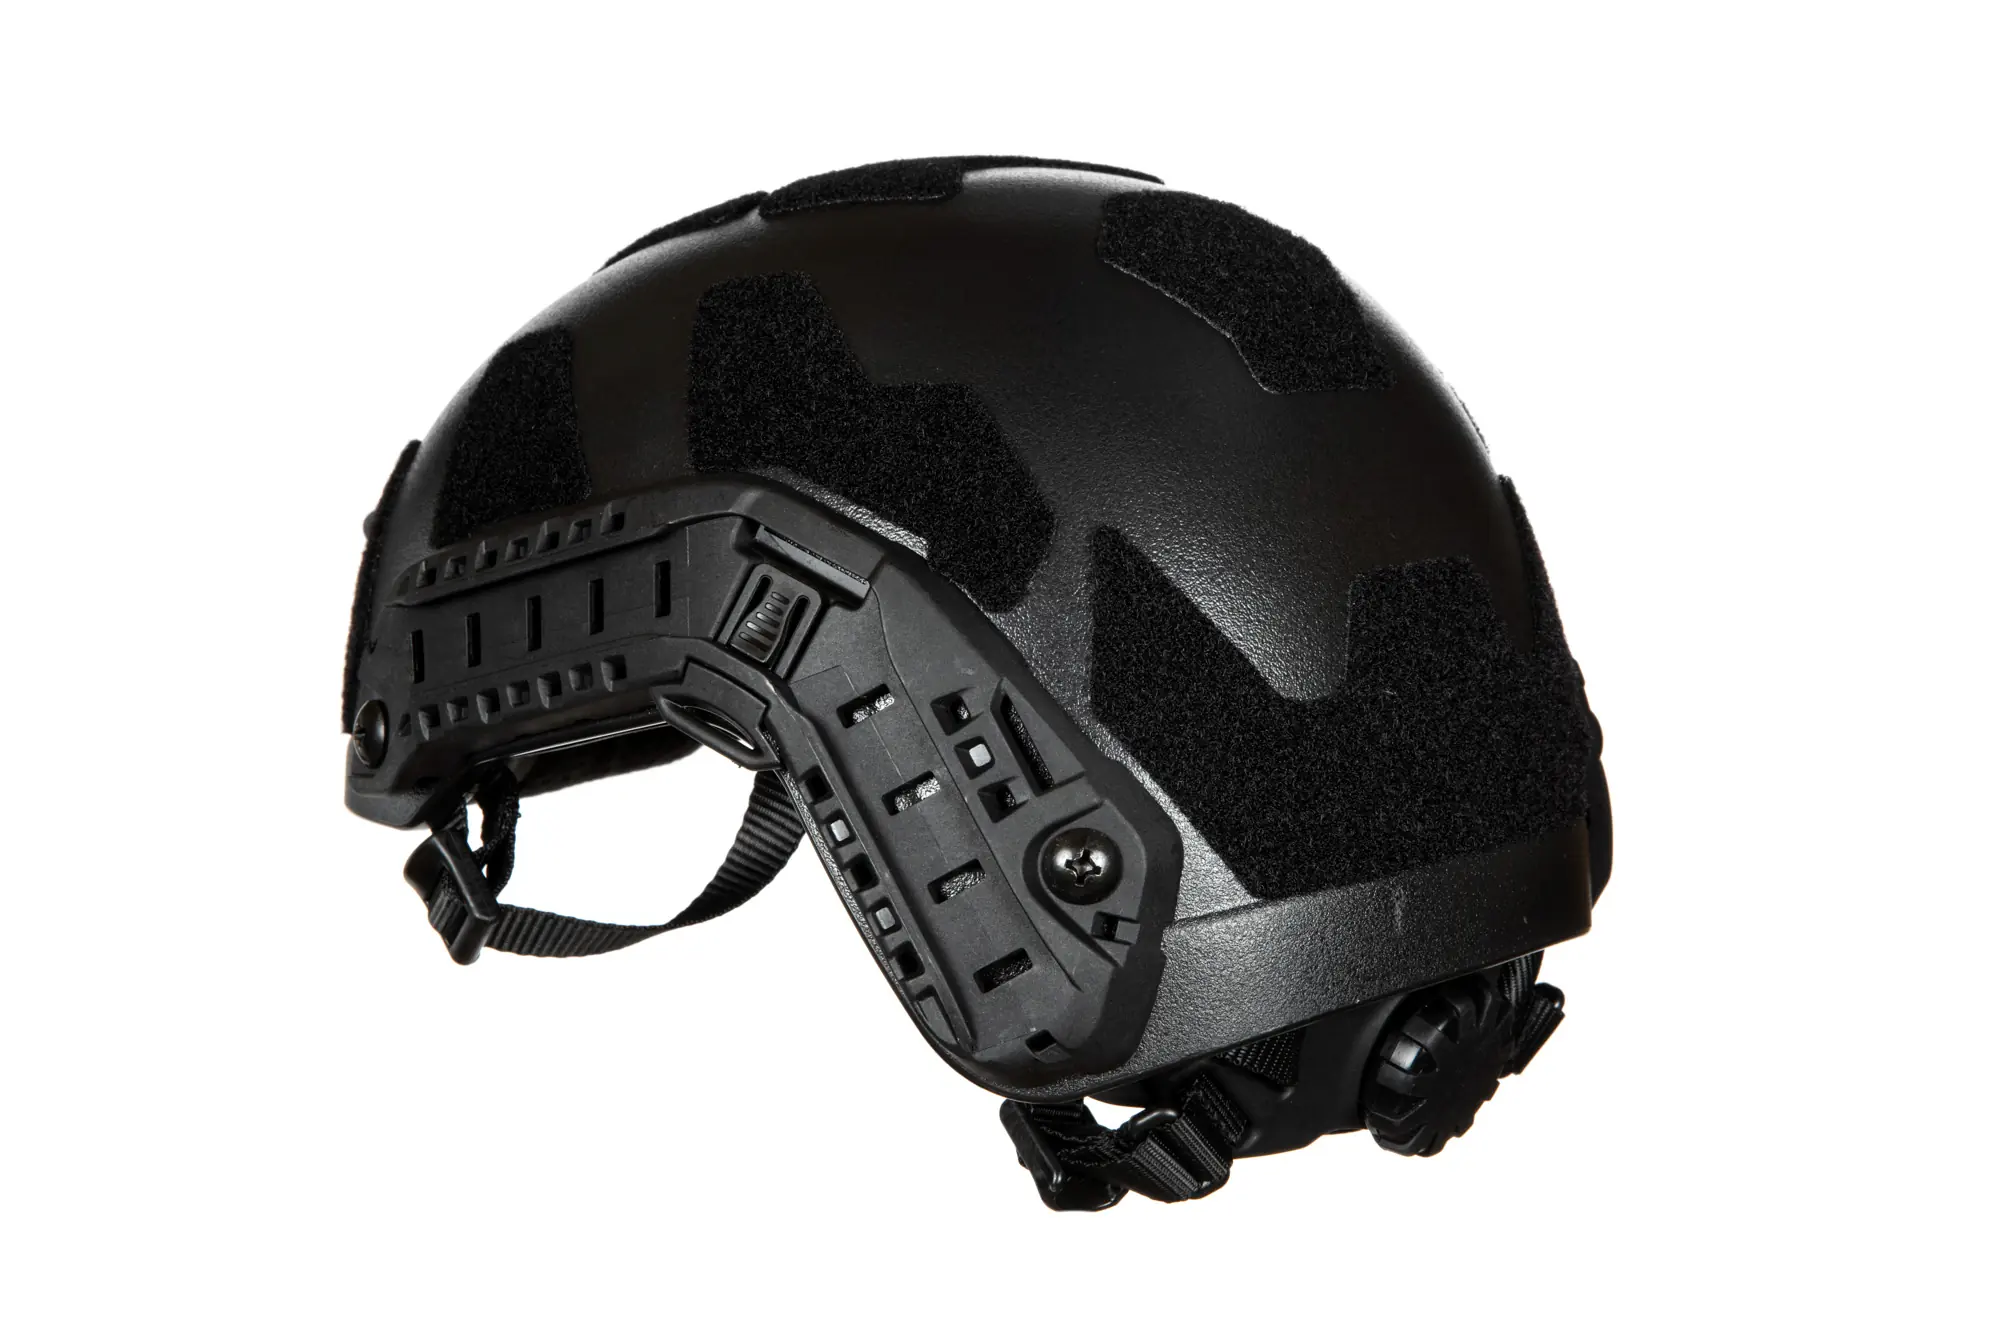 SHC X-Shield Helmet replica - Black